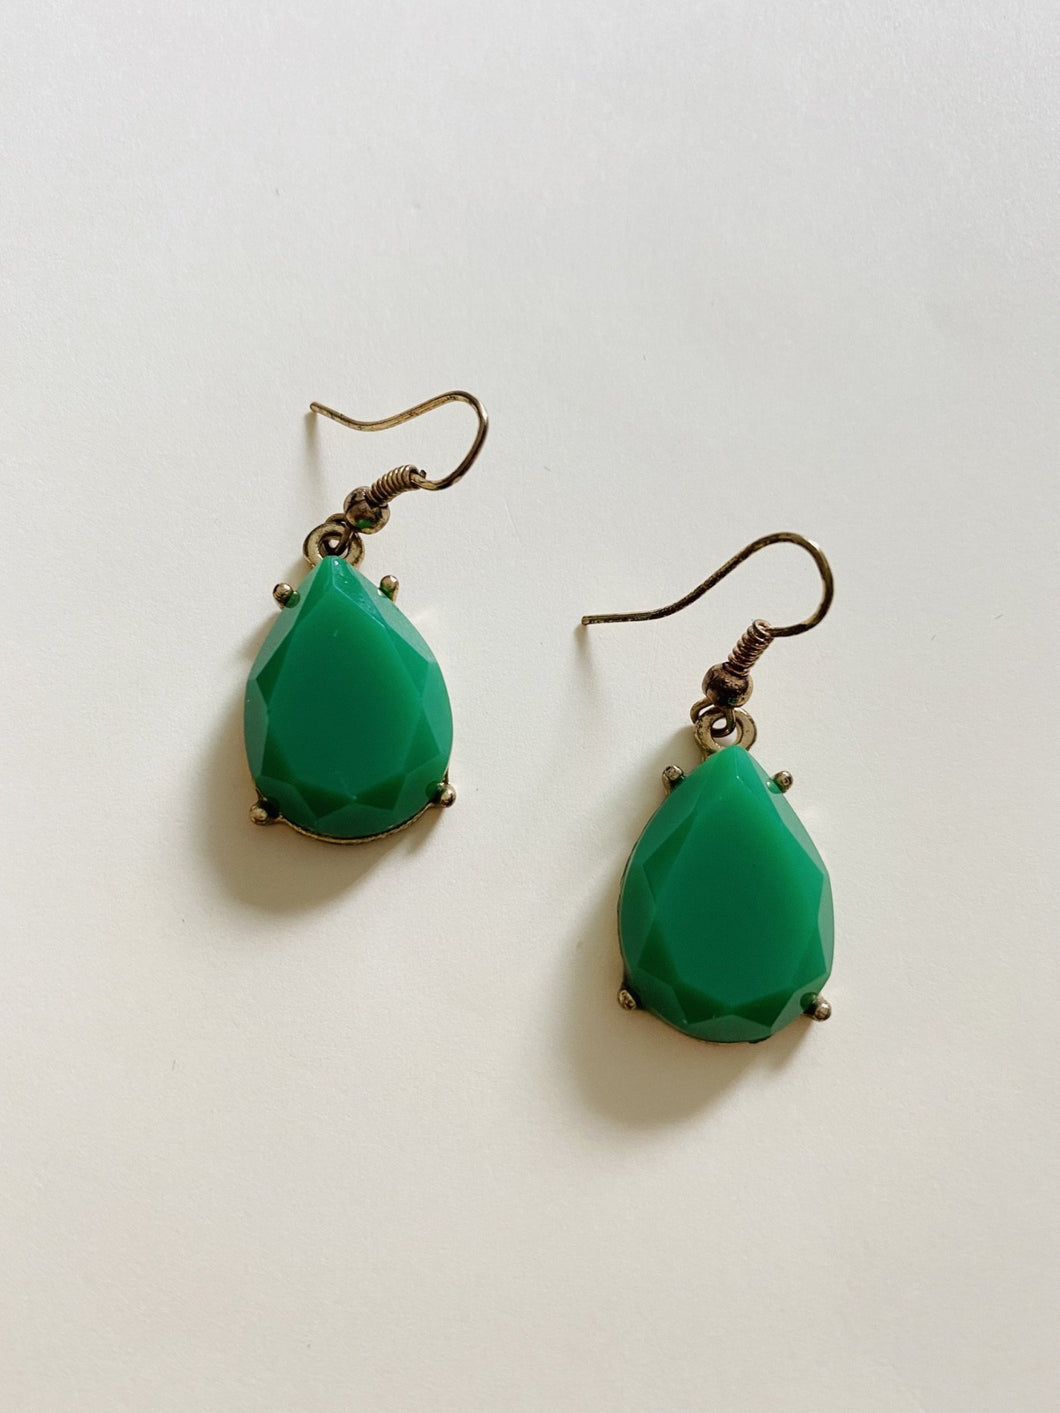 Green Onyx Earrings